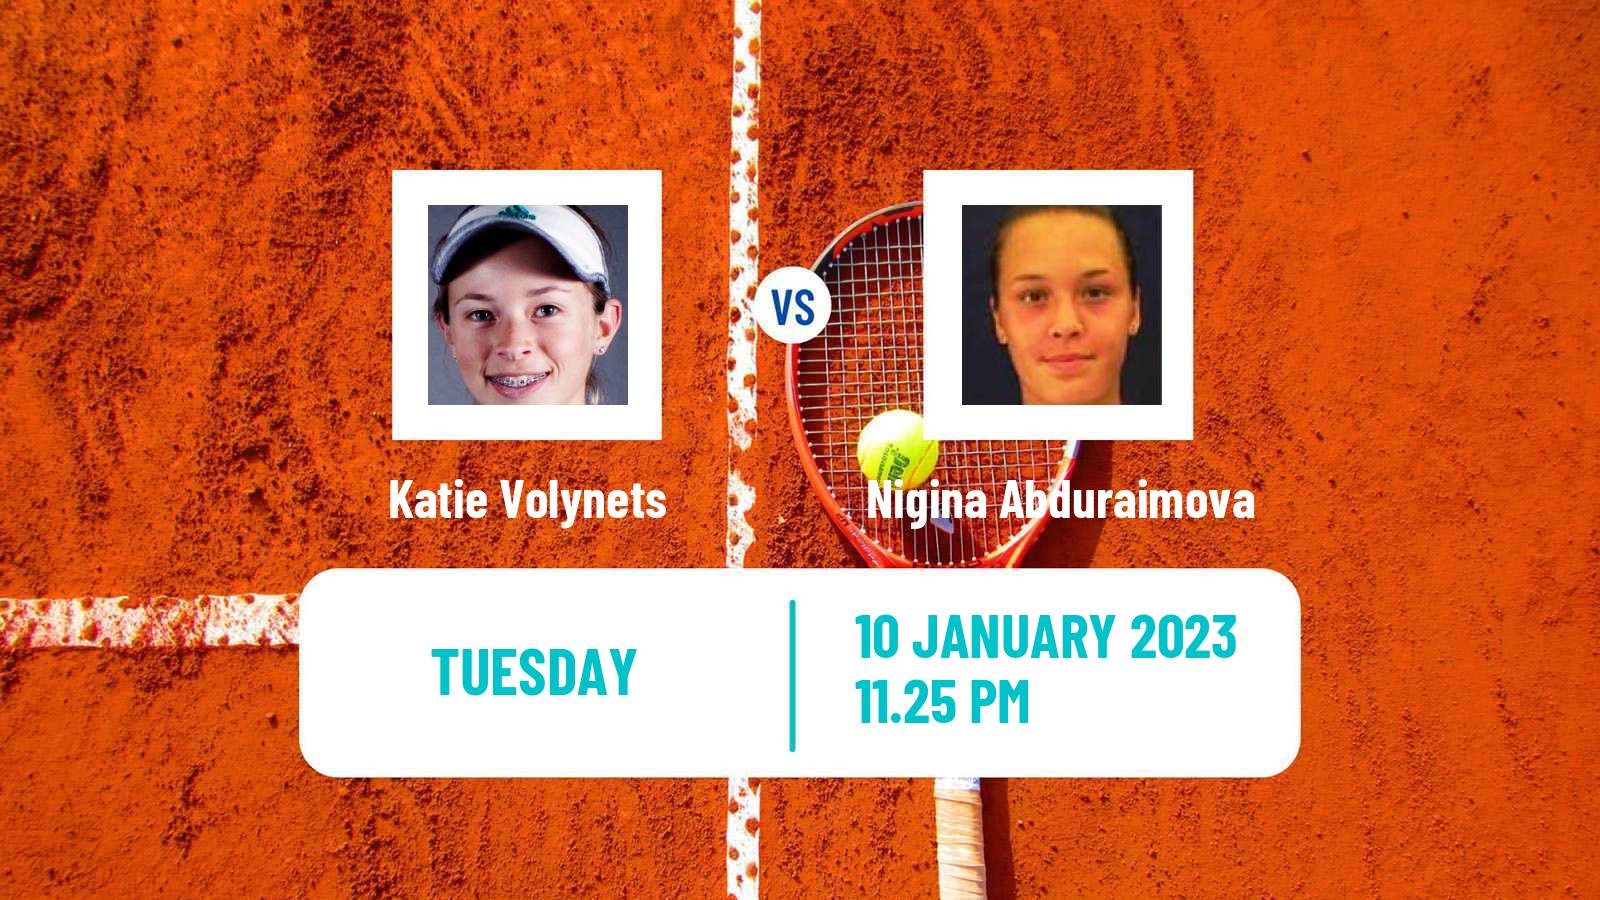 Tennis WTA Australian Open Katie Volynets - Nigina Abduraimova